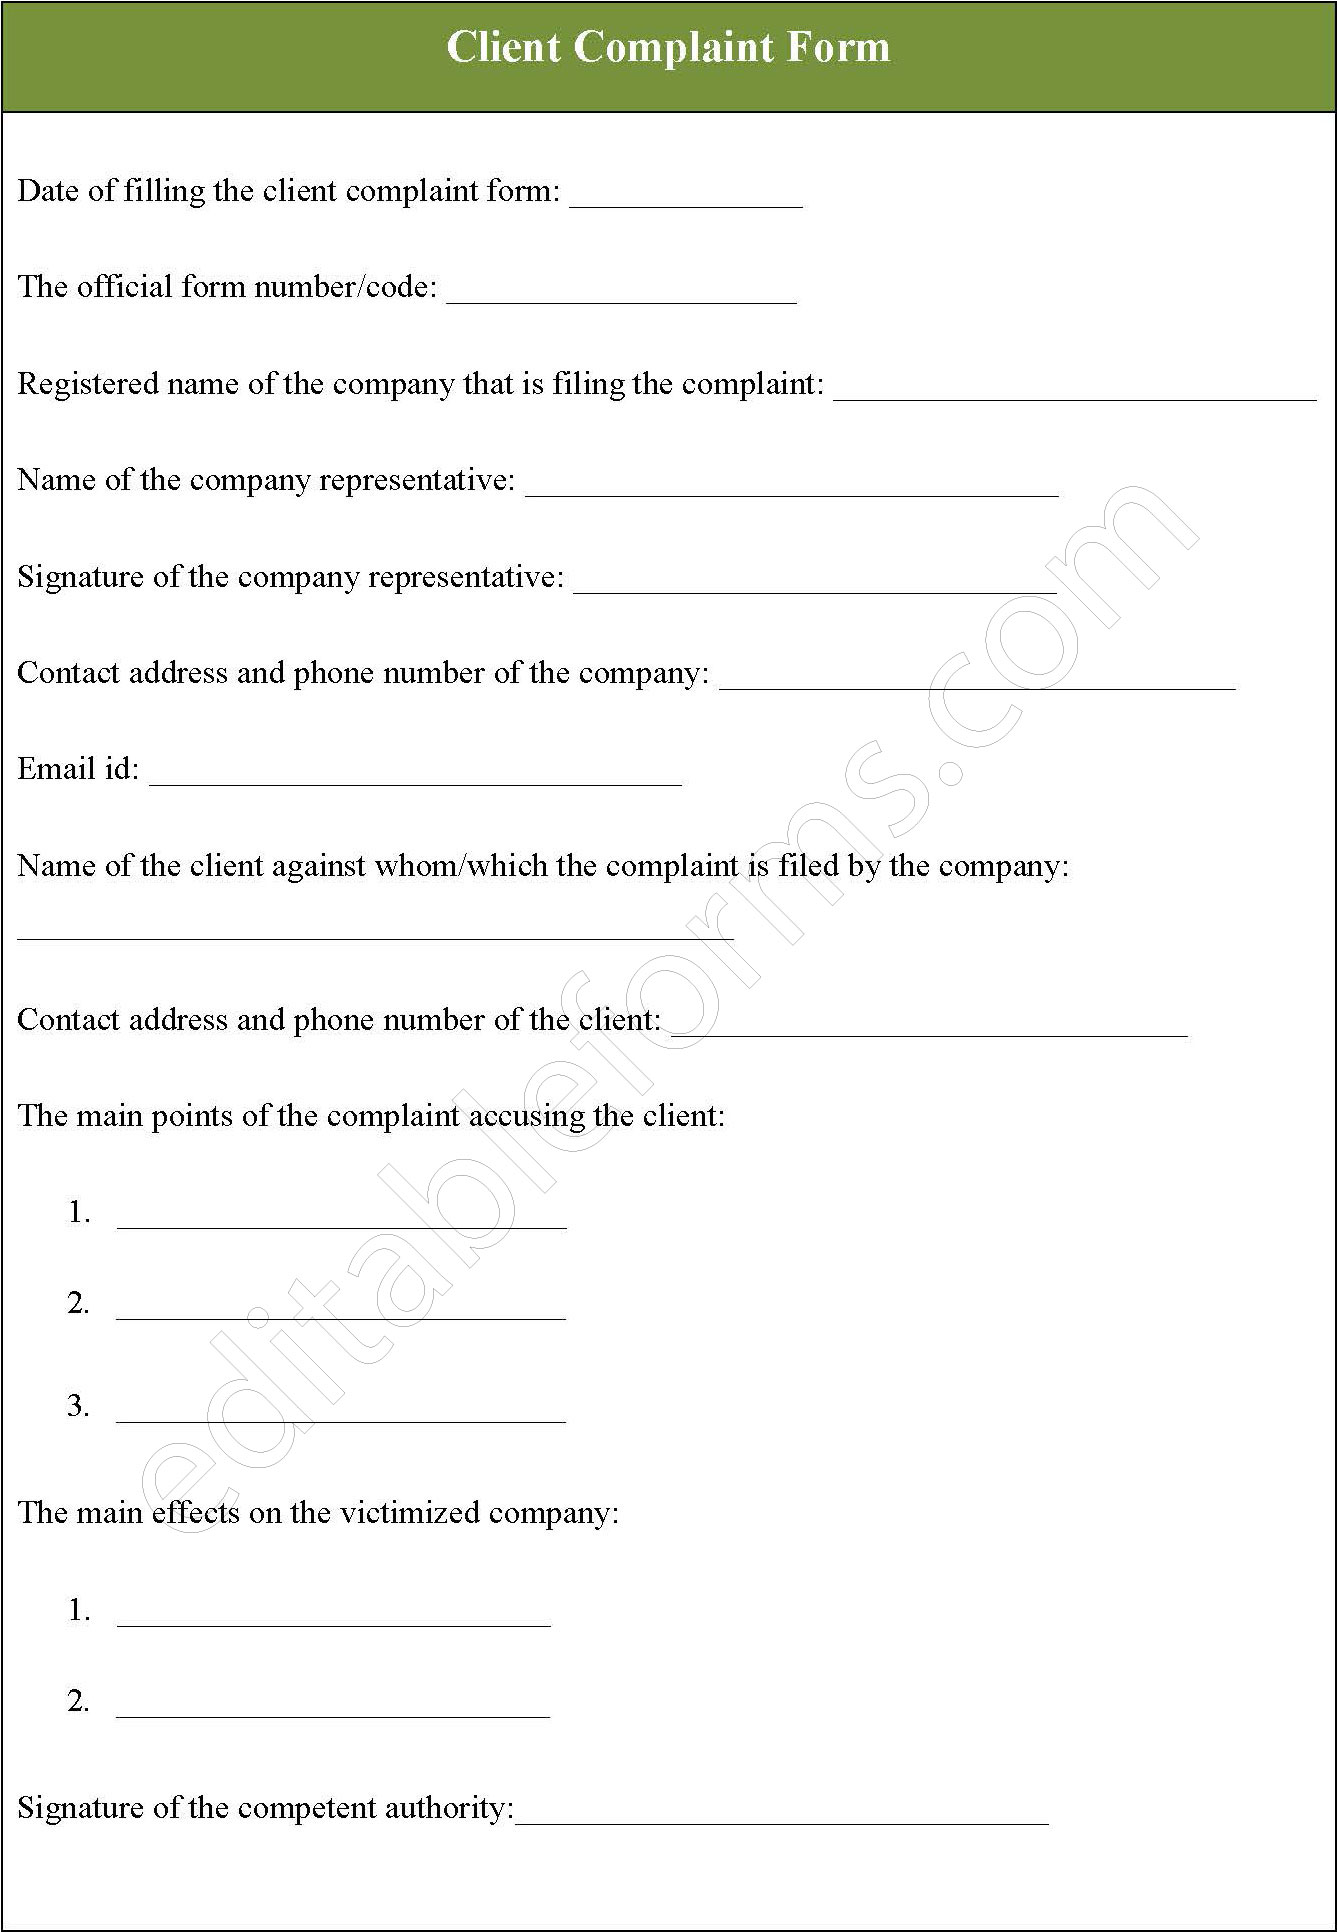 Client Complaint Form